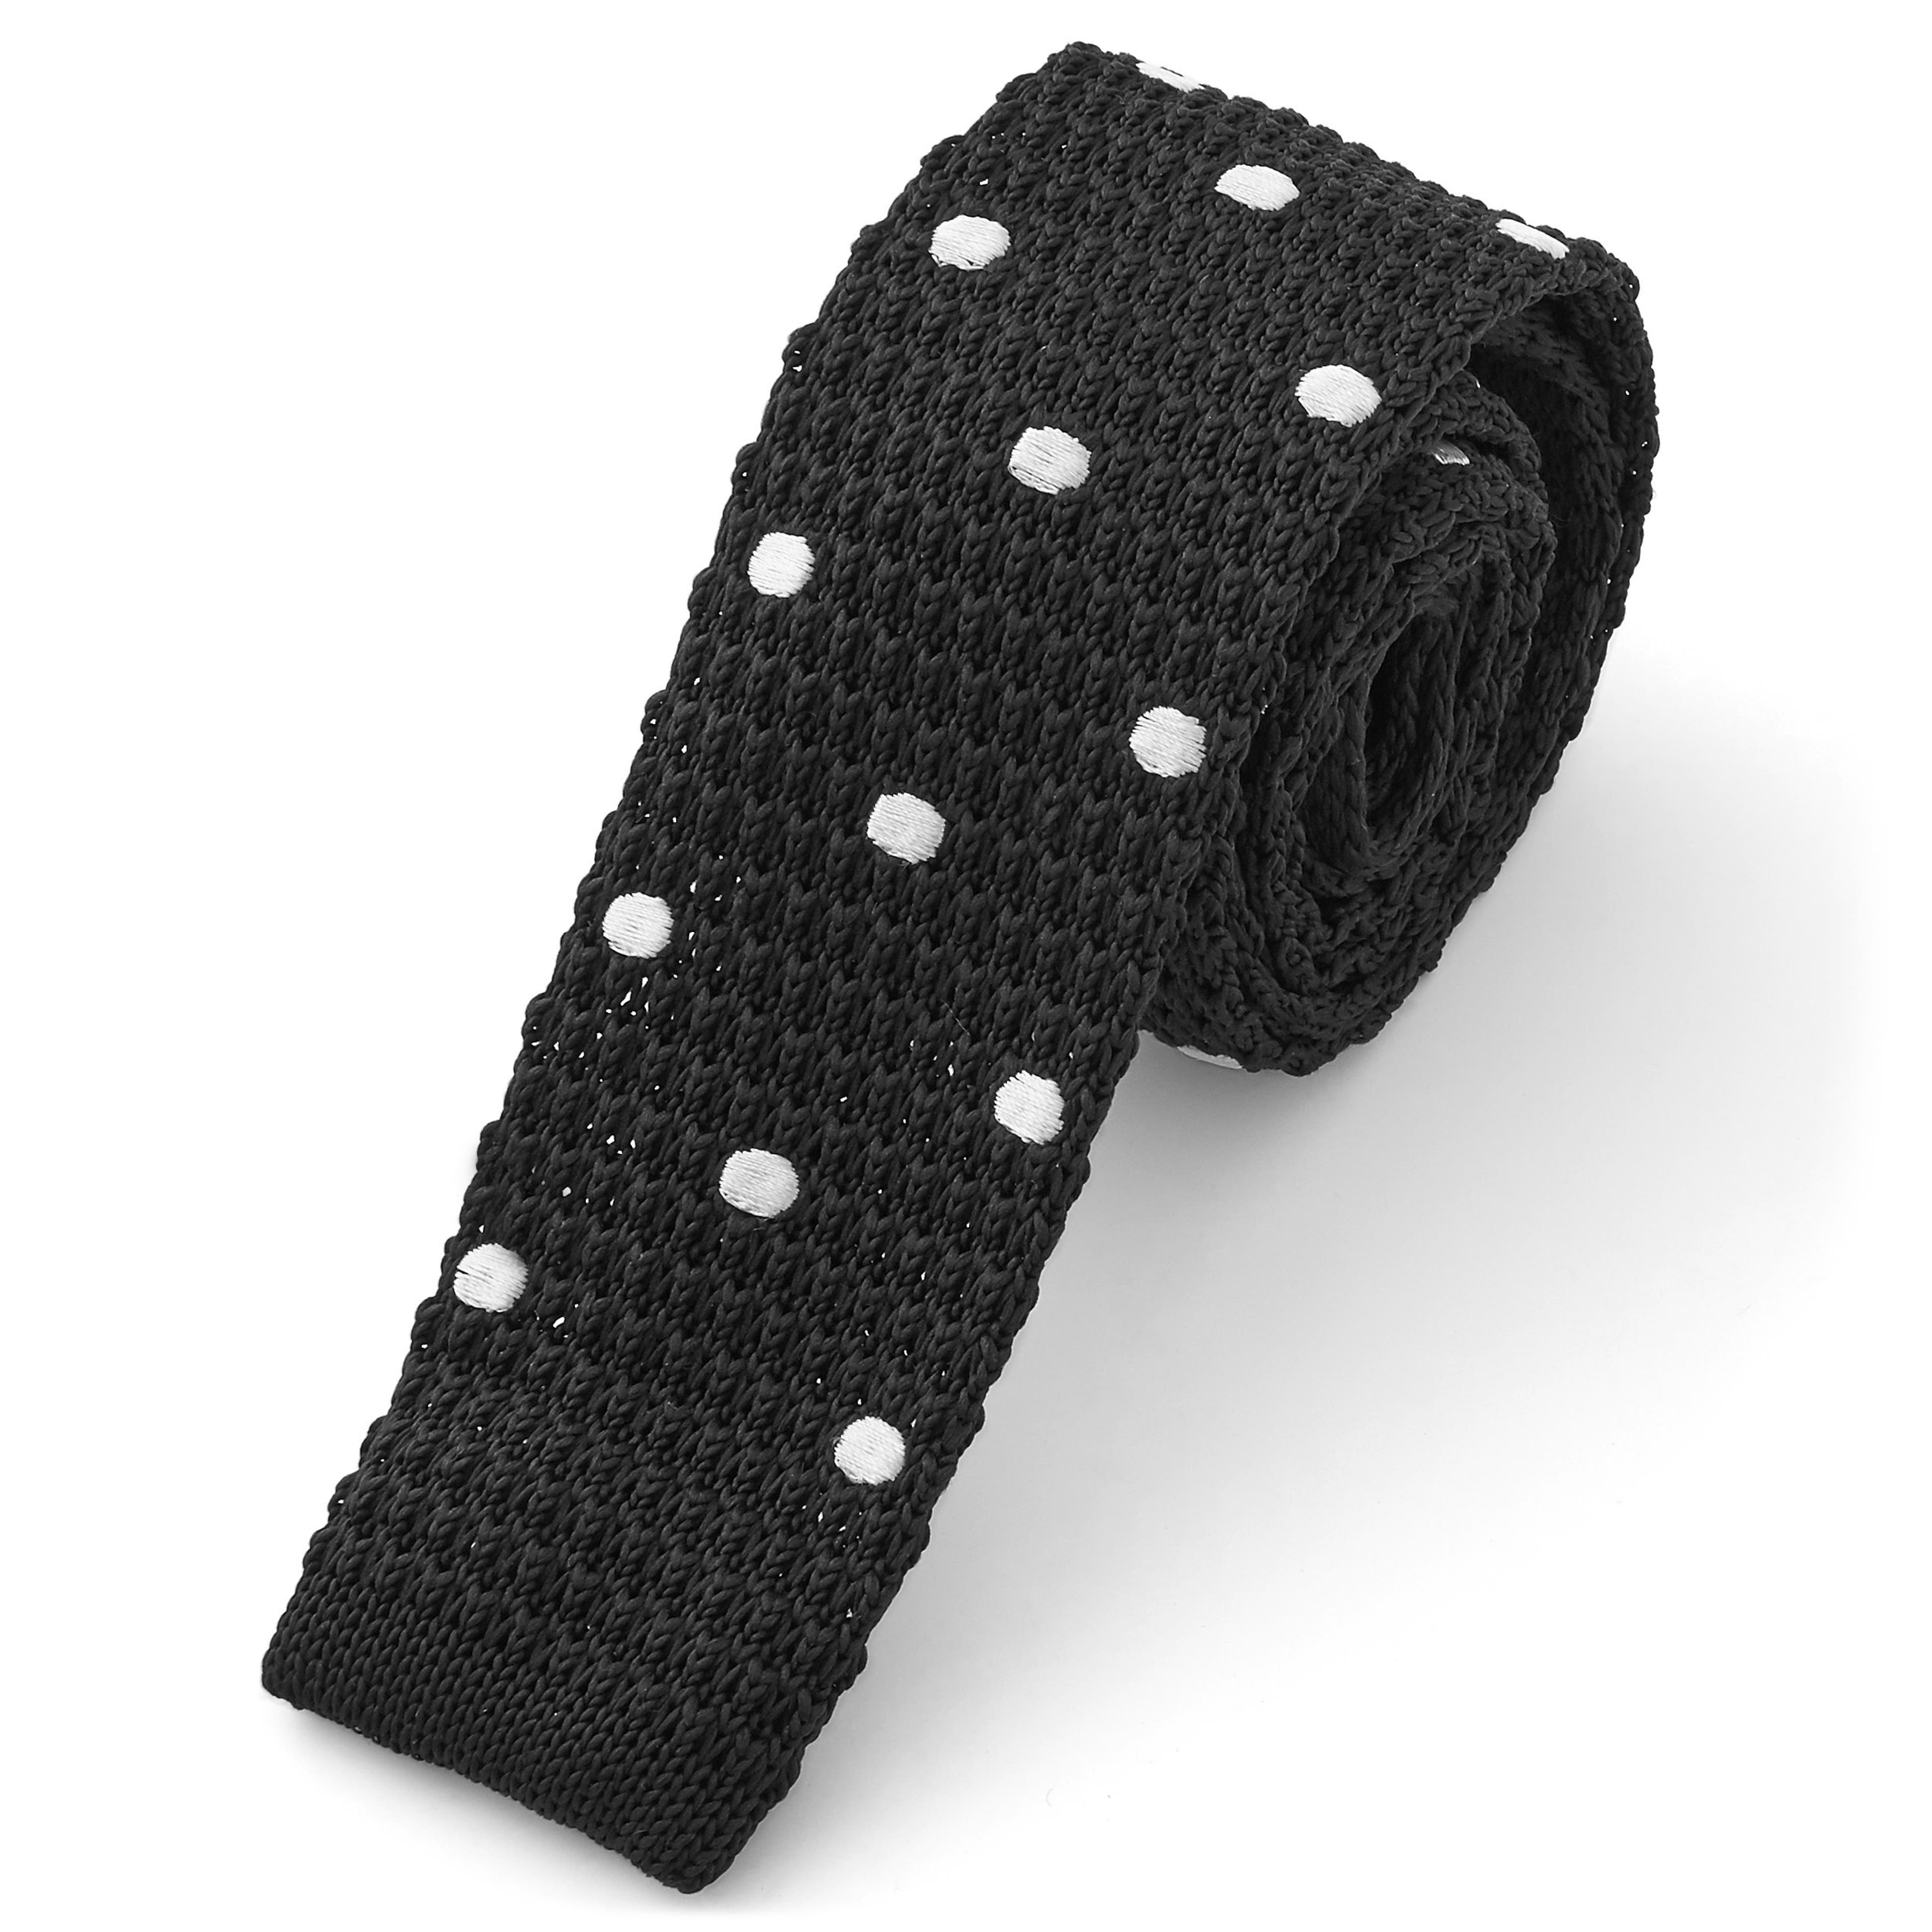 Cravate tricotée noire à pois blancs